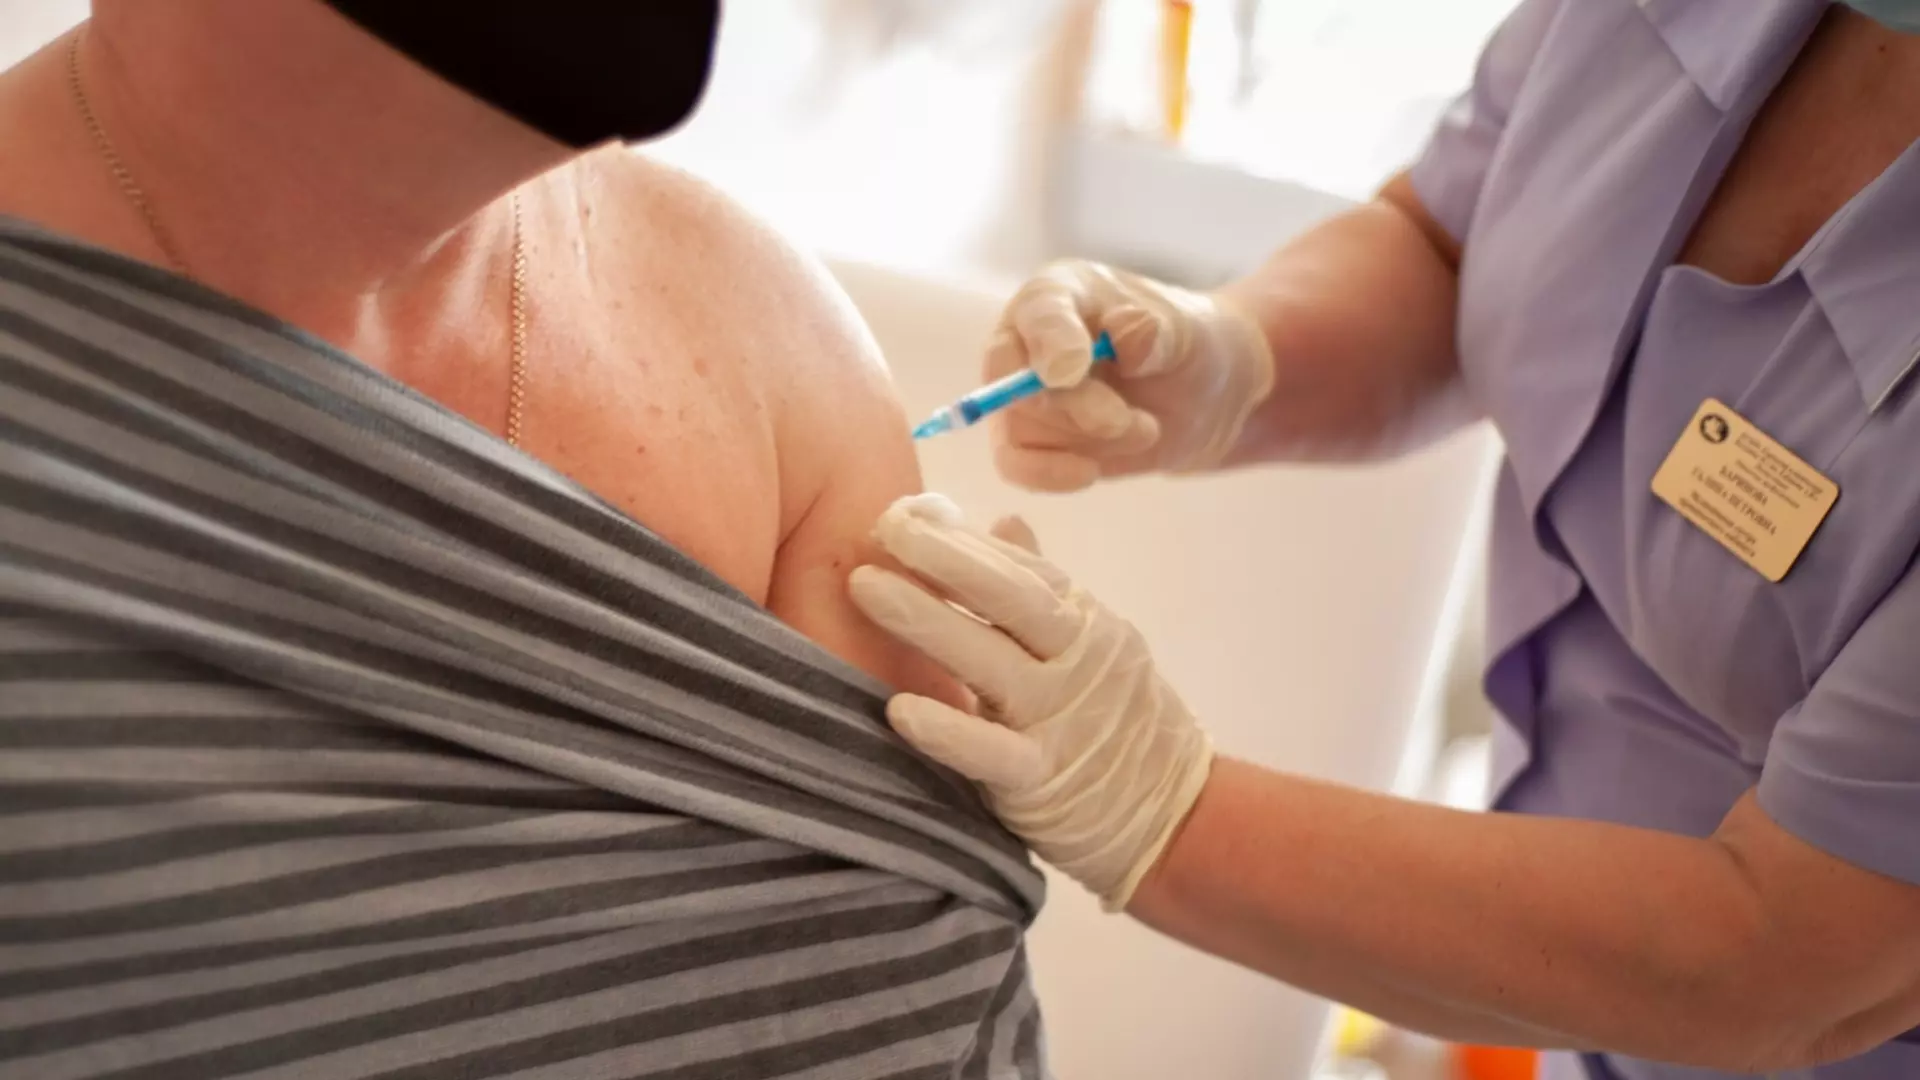 Вакцинацию от энцефалита оптимально начинать с октября по март.